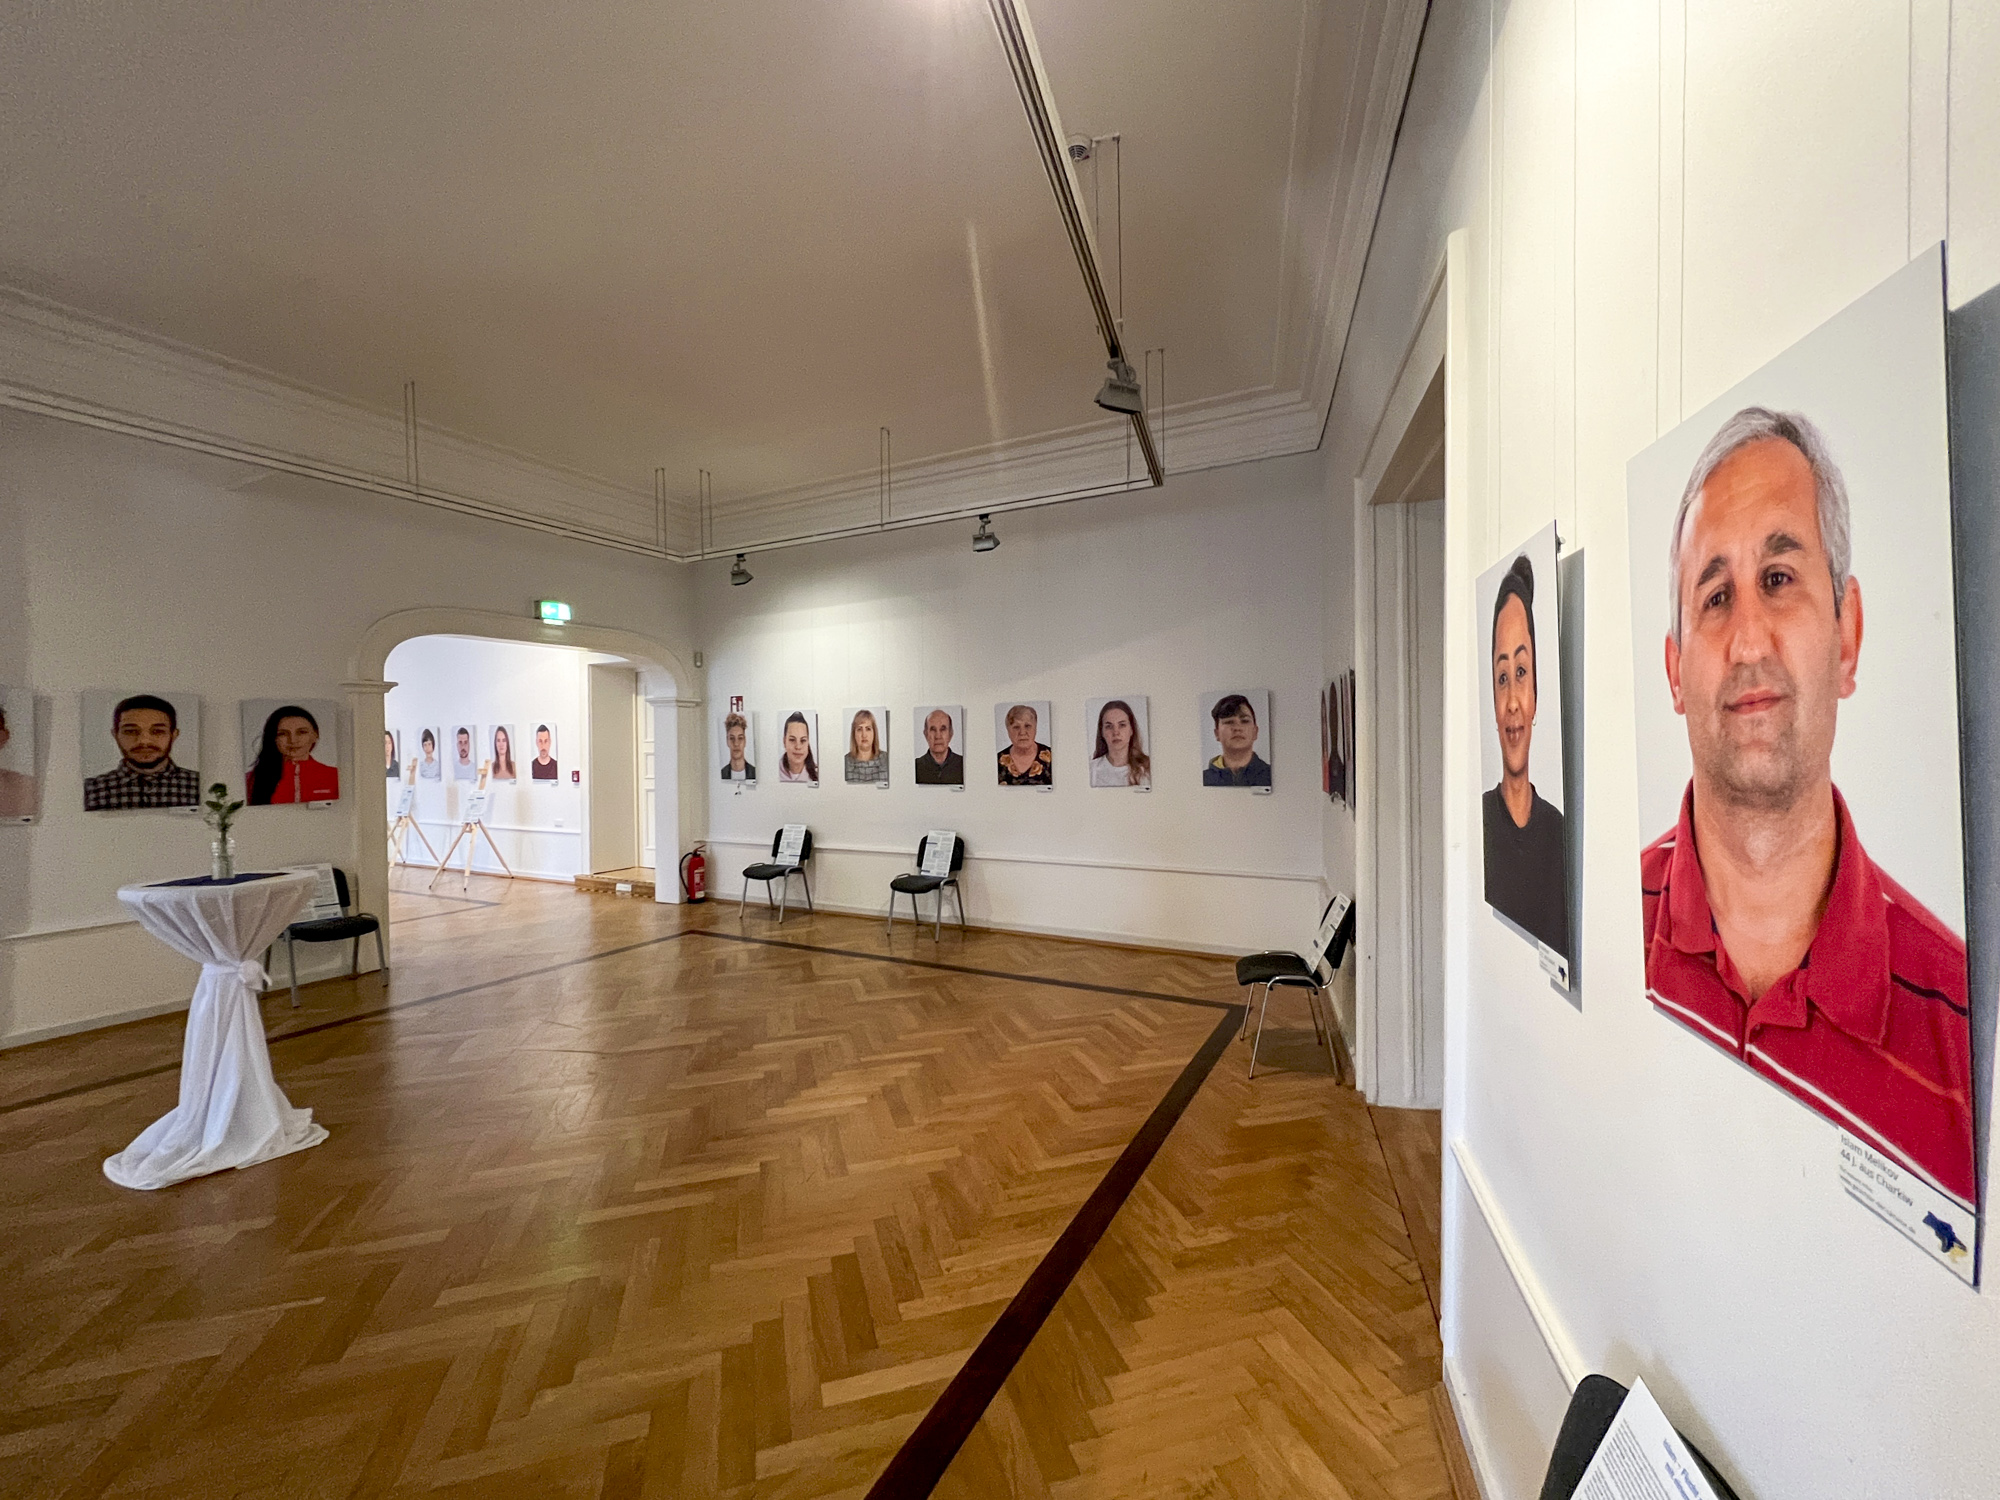 Raum mit Personenbildern an der Wand